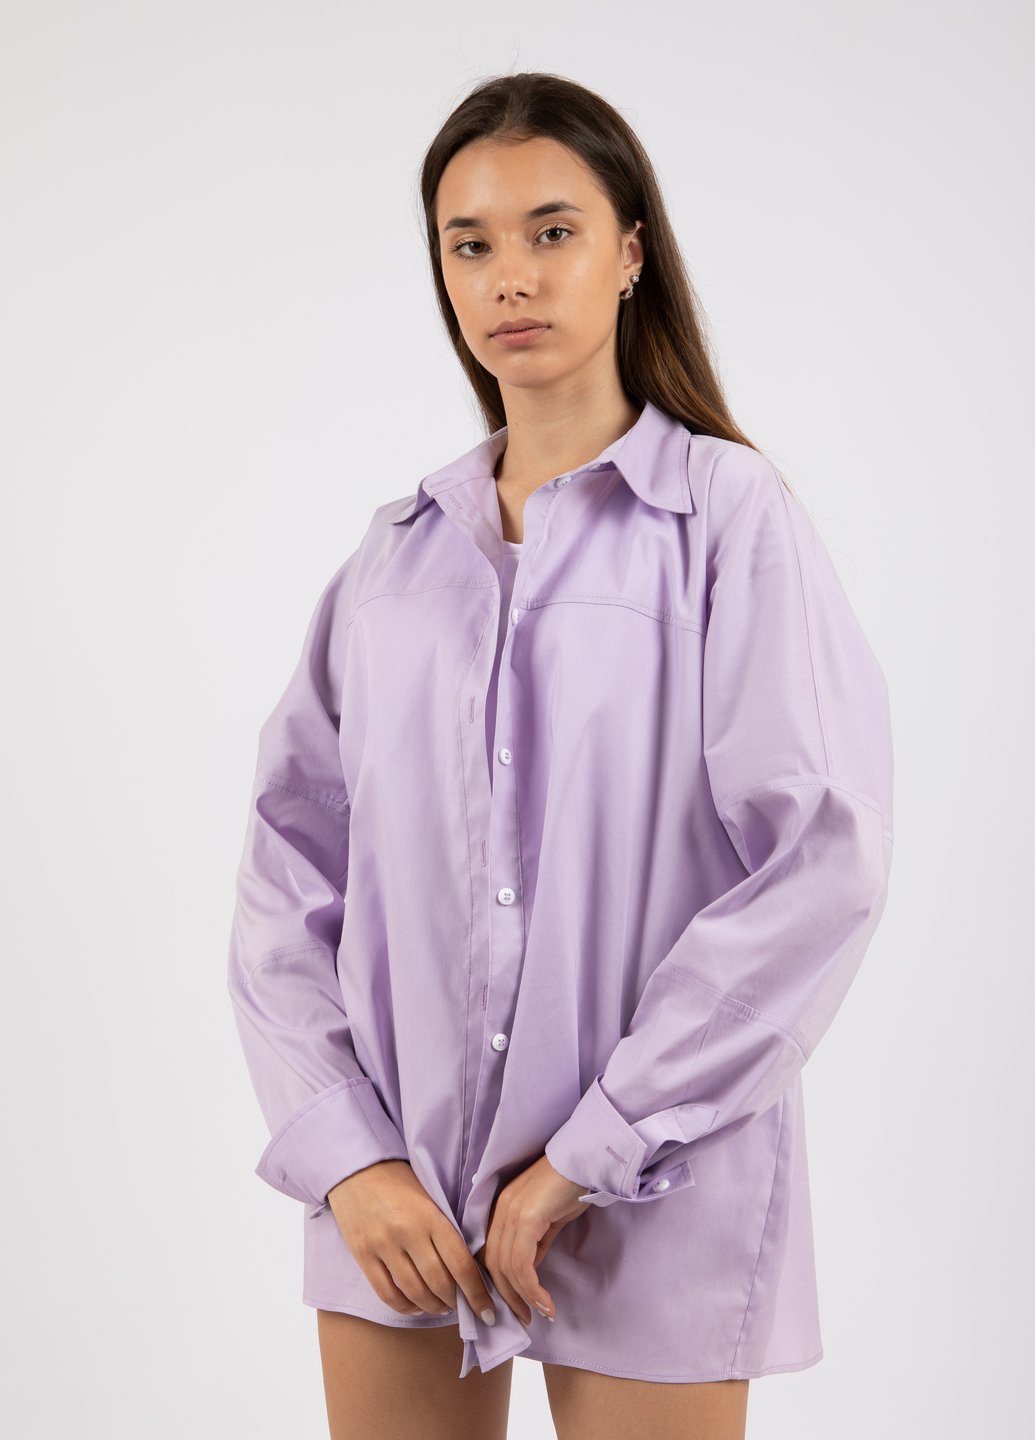 Купить Оверсайз хлопковая рубашка женская Merlini Белиз 200000033 - Сиреневый, 42-44 в интернет-магазине